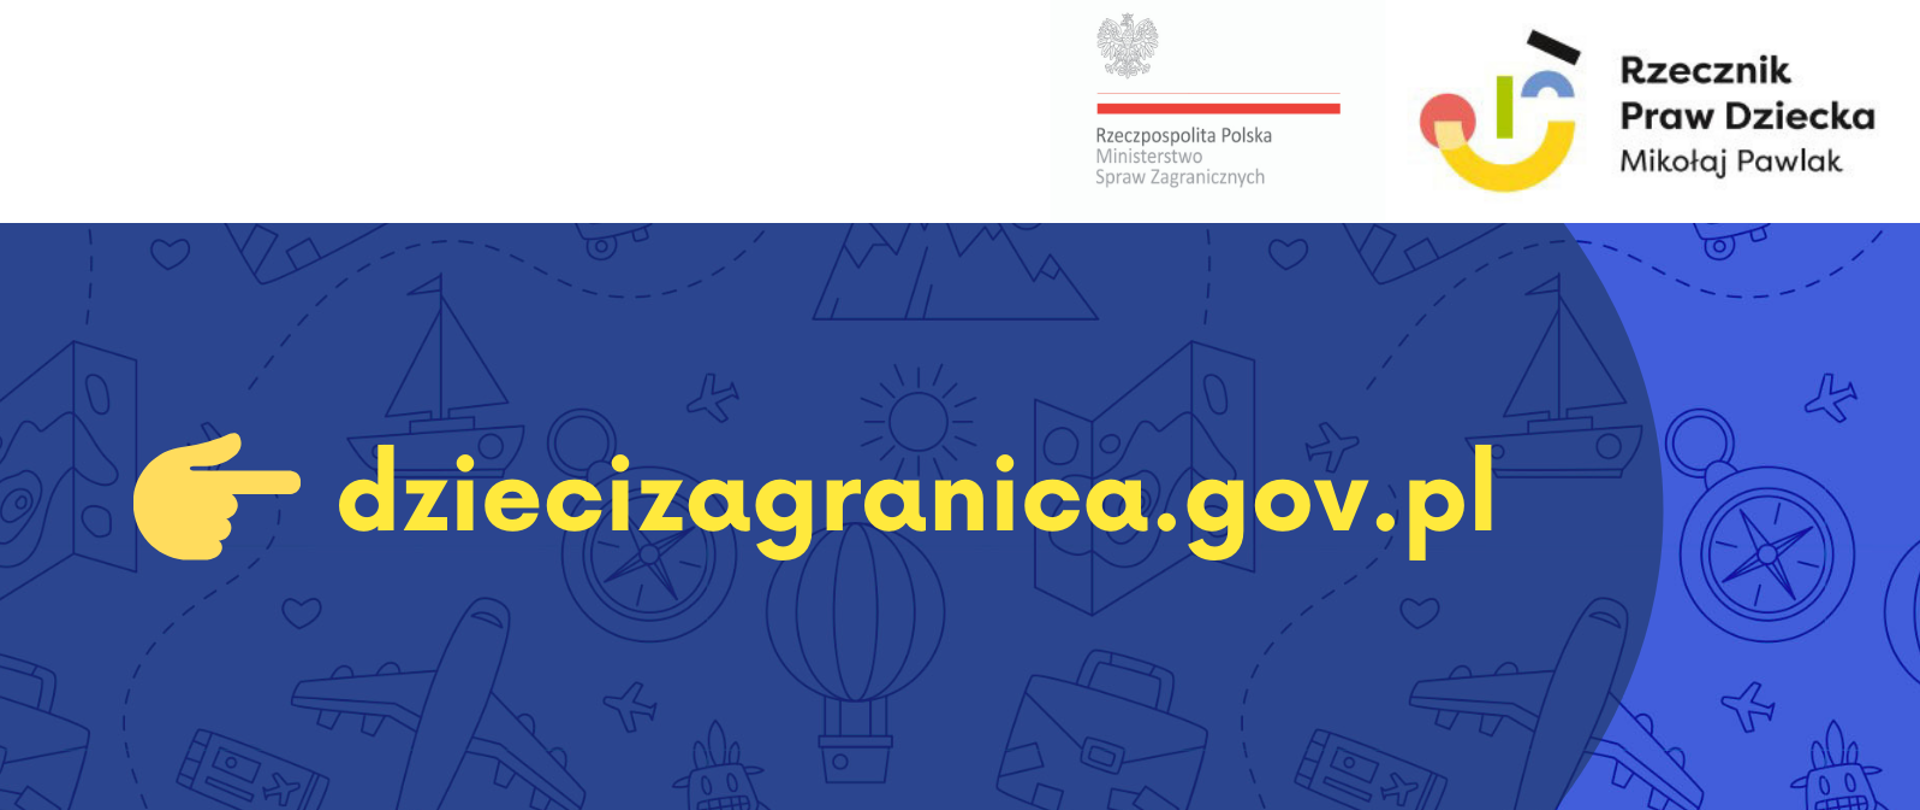 Logo akcji informacyjnej dziecizagranica.gov.pl